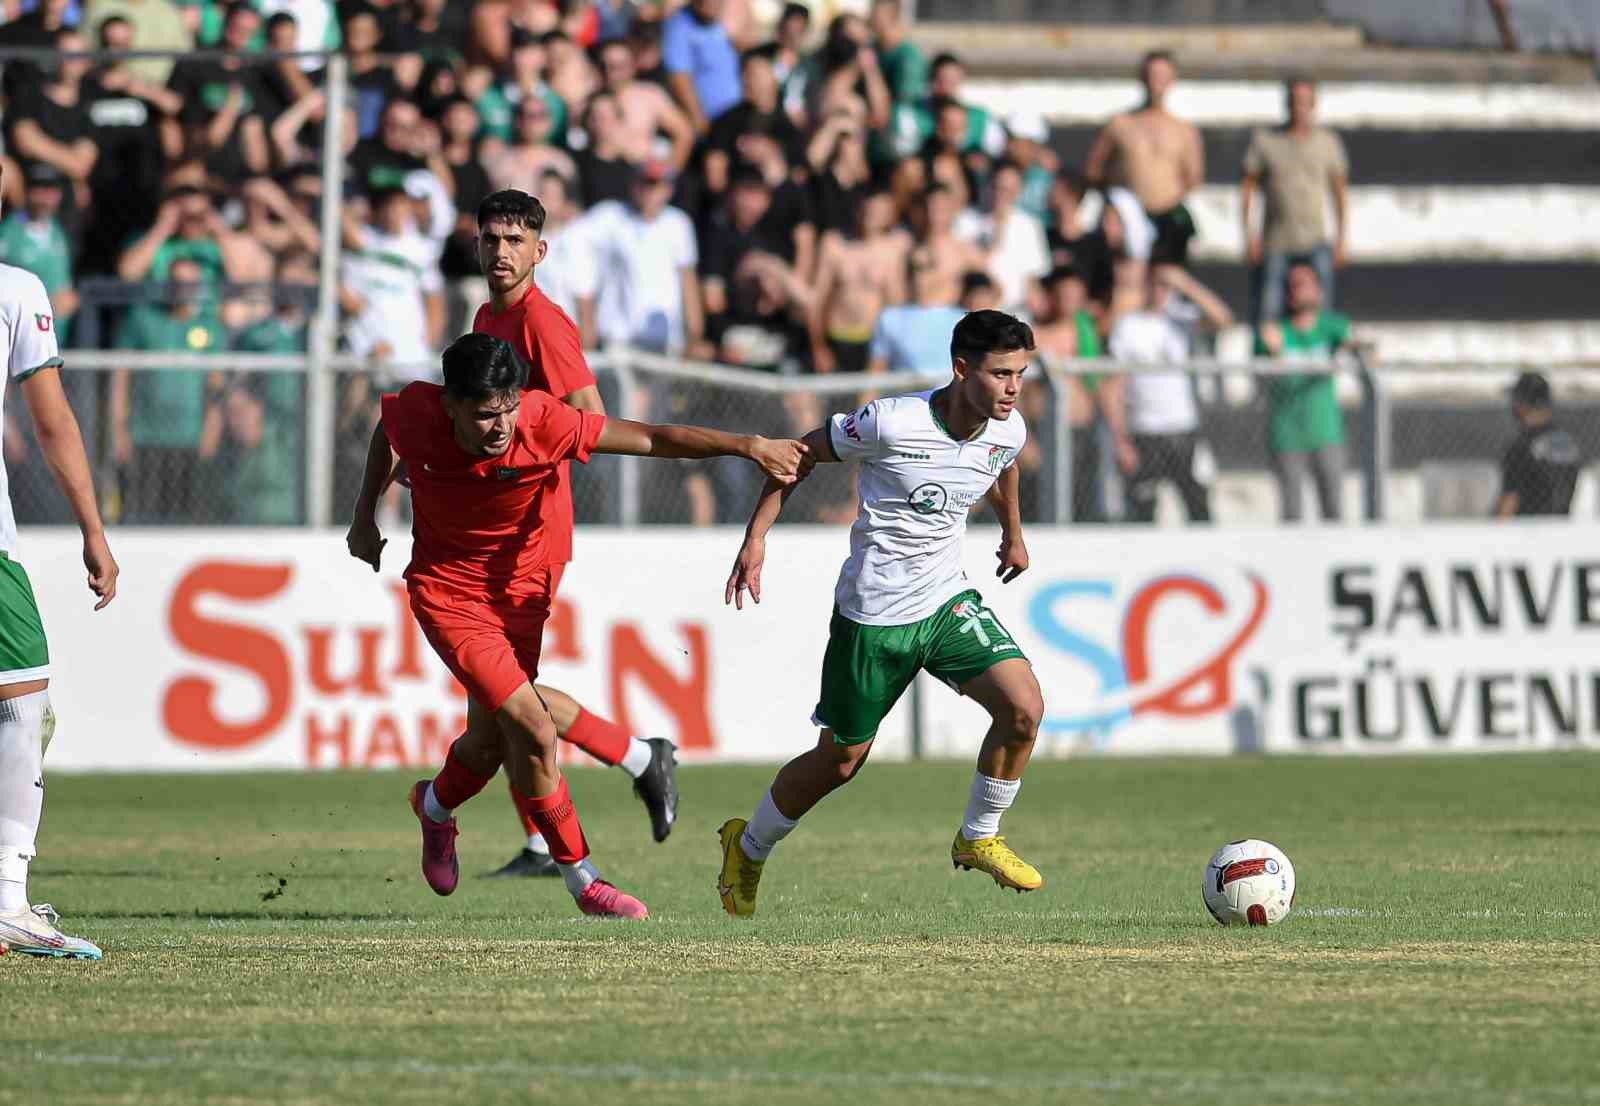 Bursasporlu Futbolcu Mustafa Genç 2 Maç Ceza Aldı